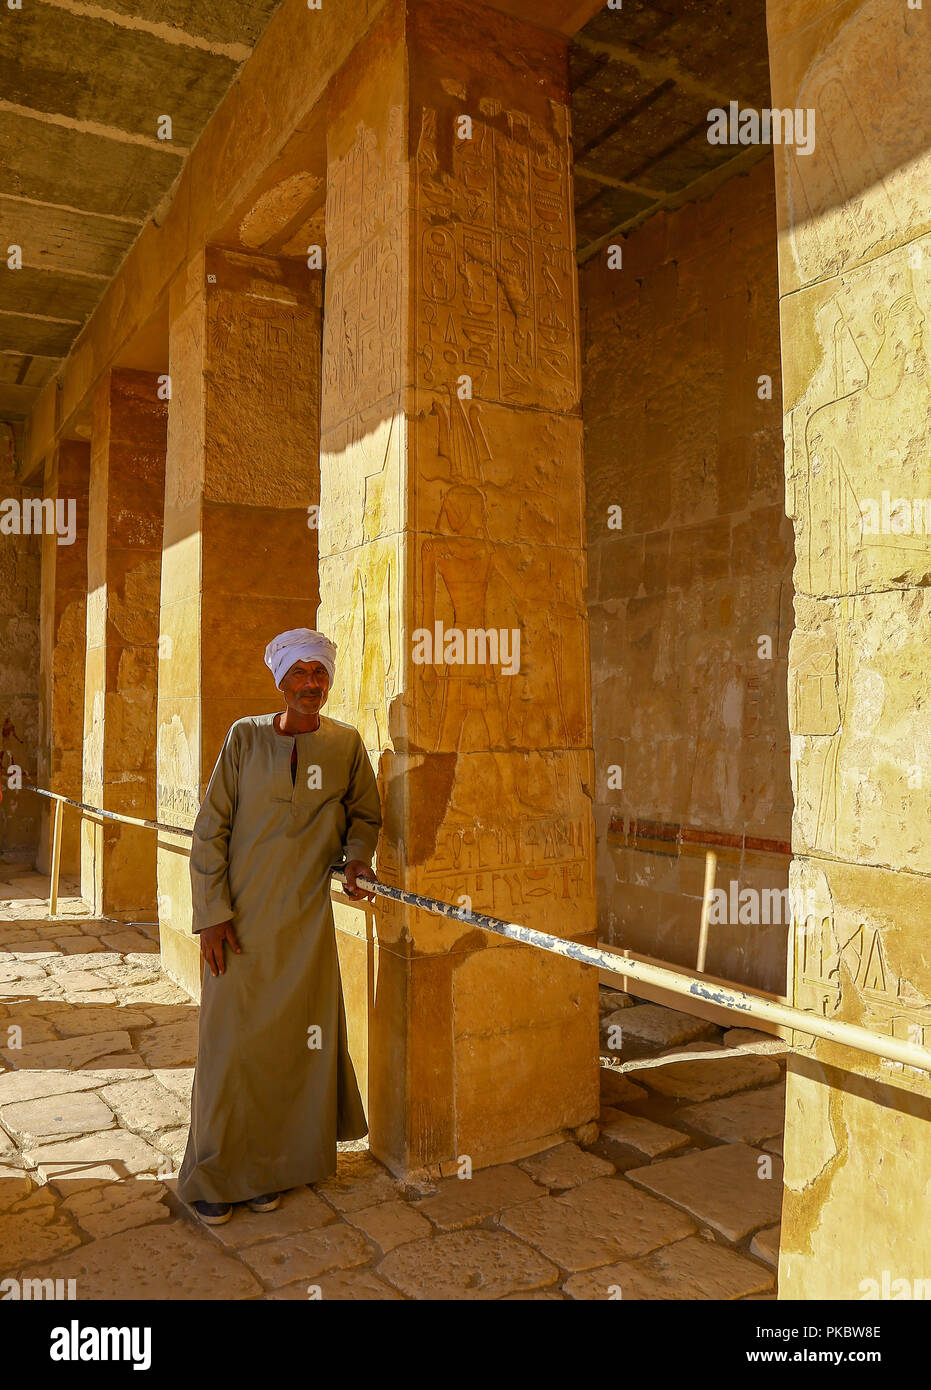 Un homme vêtu de vêtements arabes au temple funéraire d'Hatchepsout, Deir el-Bahari, Louxor, Egypte, Afrique du Sud Banque D'Images